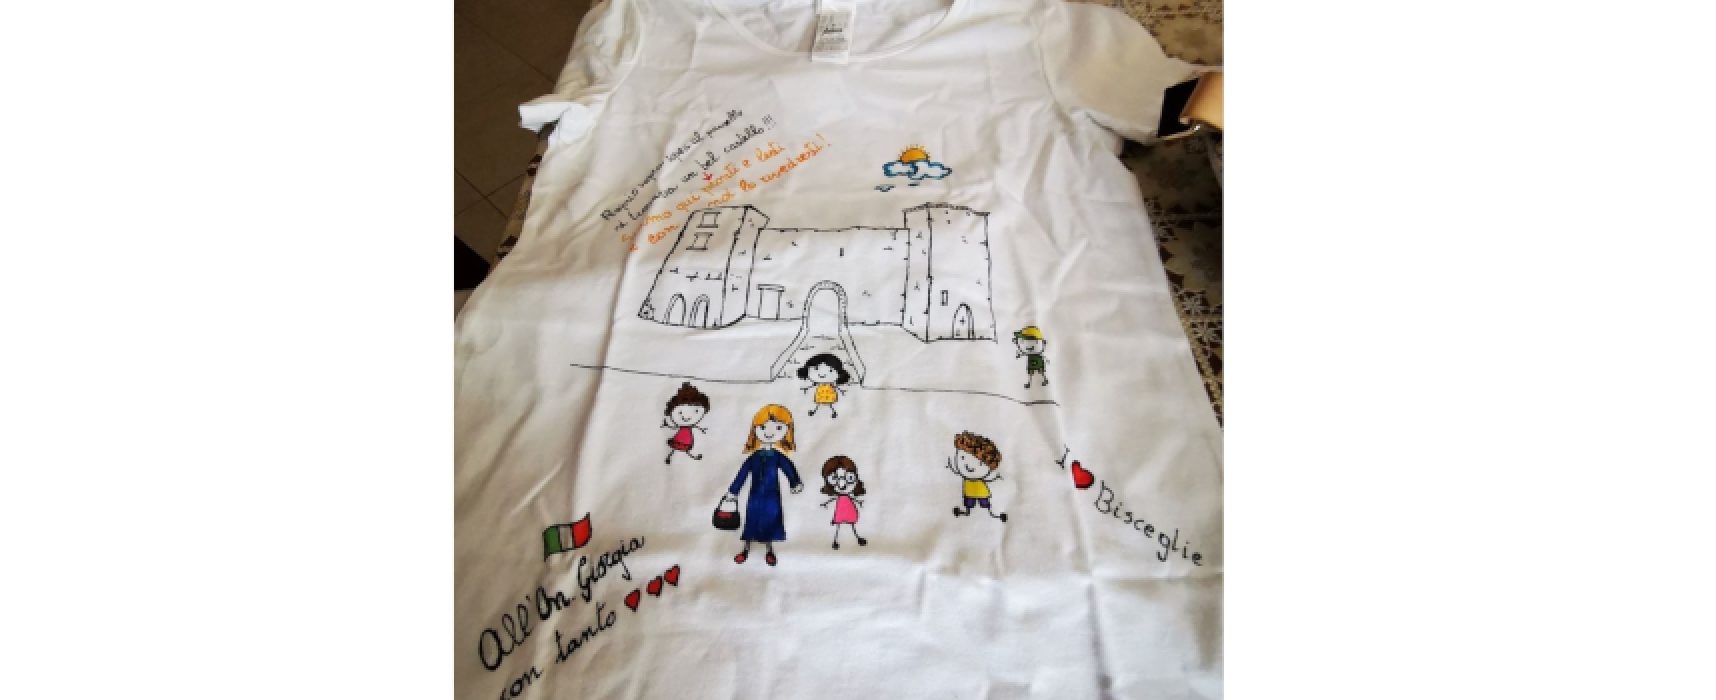 Docenti biscegliesi regalano maglia a Giorgia Meloni, Galantino (FdI): “Storia locale nelle scuole”